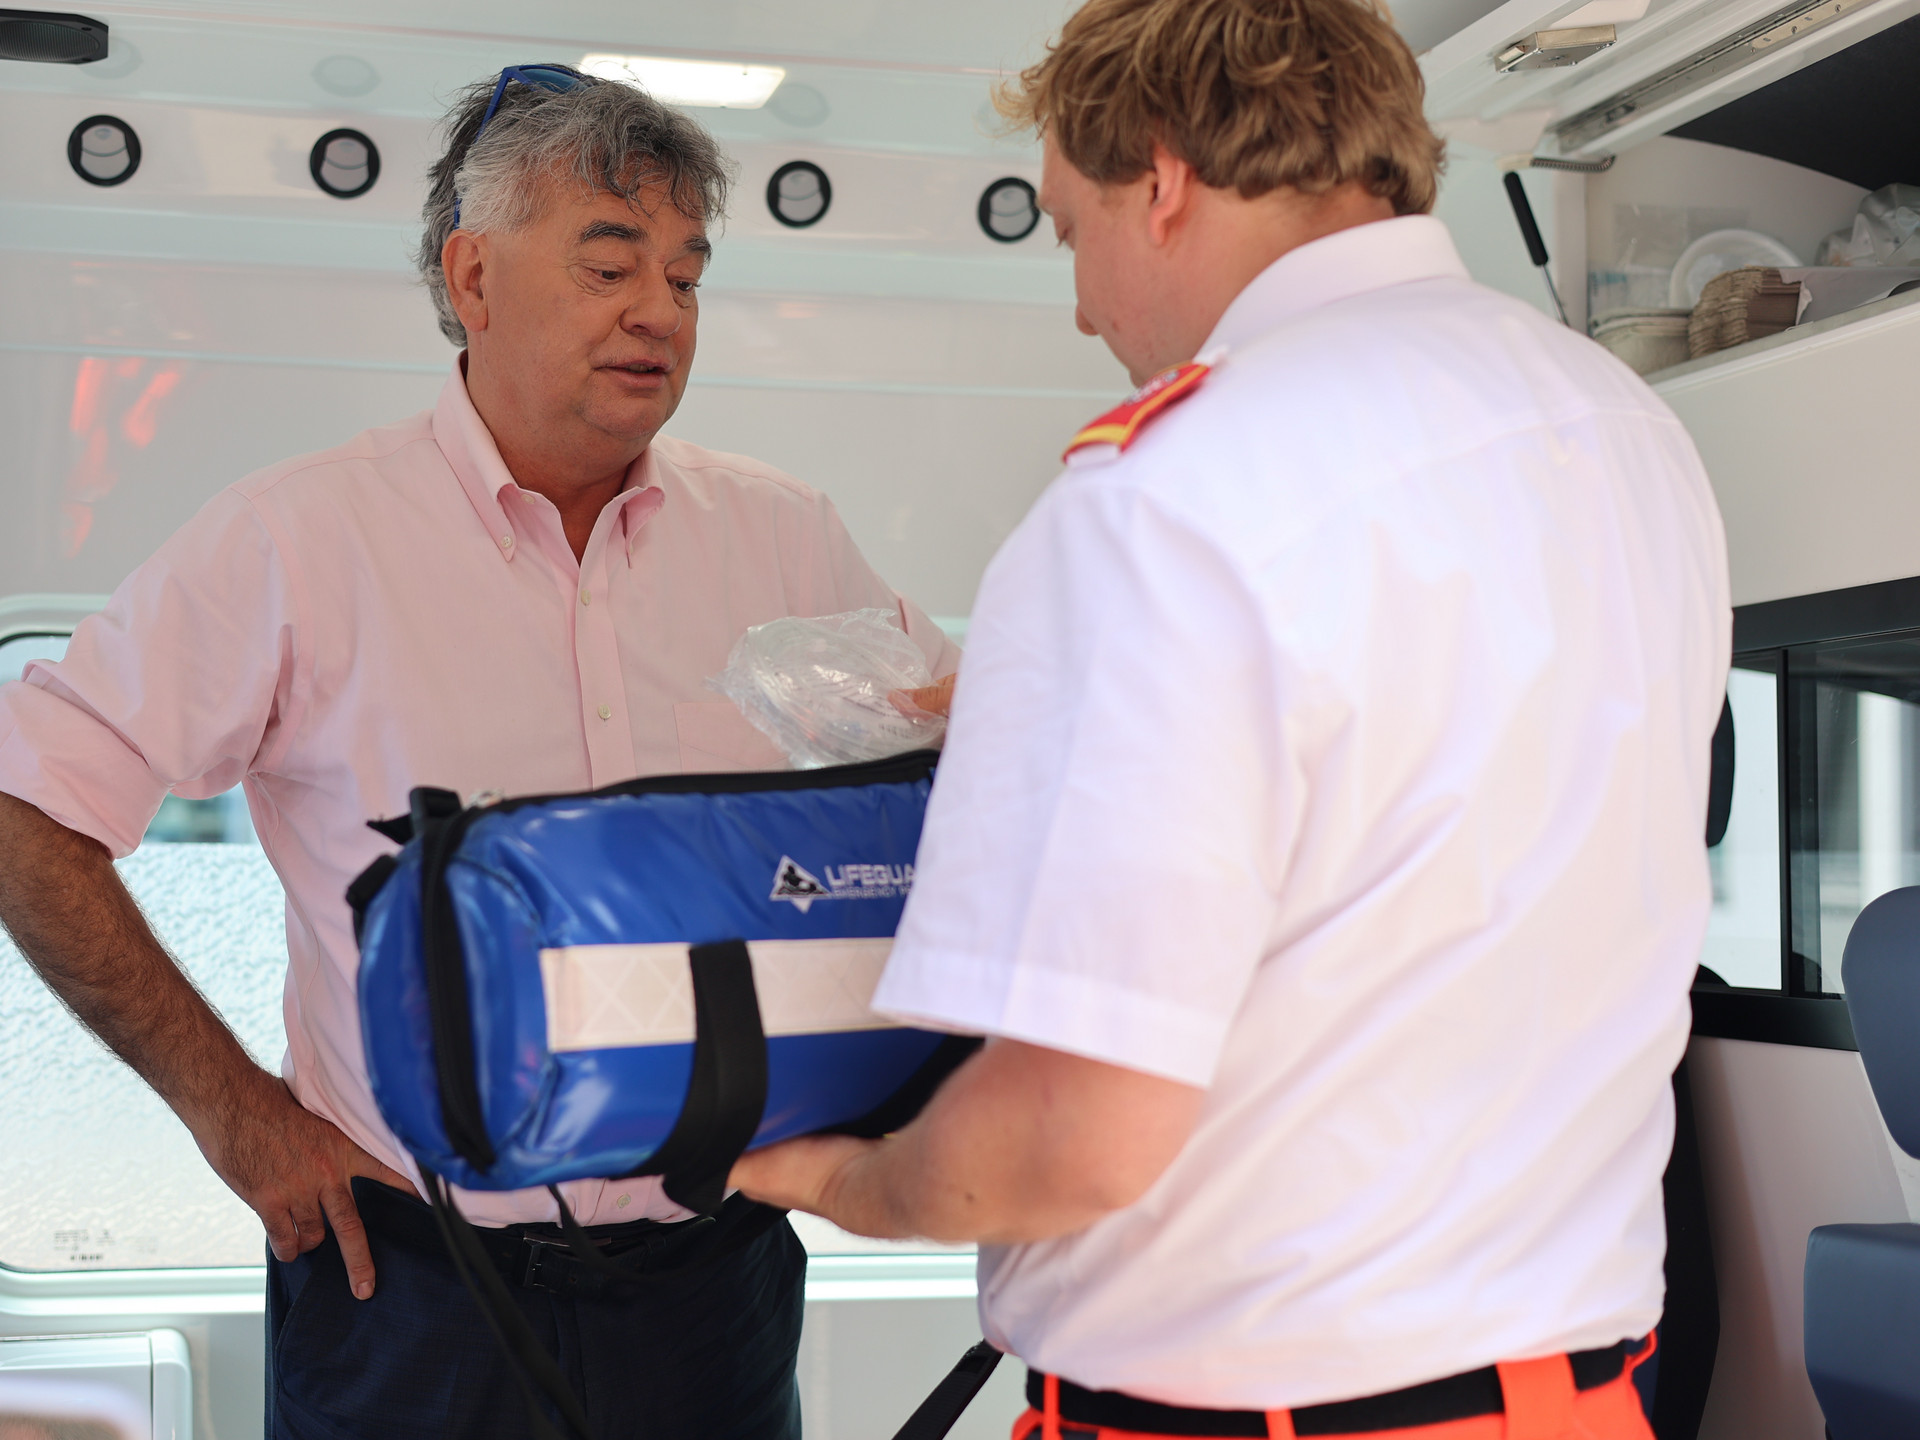 Ein Sanitäter in Uniform zeigt Werner Kogler Equipment aus dem Rettungswagen